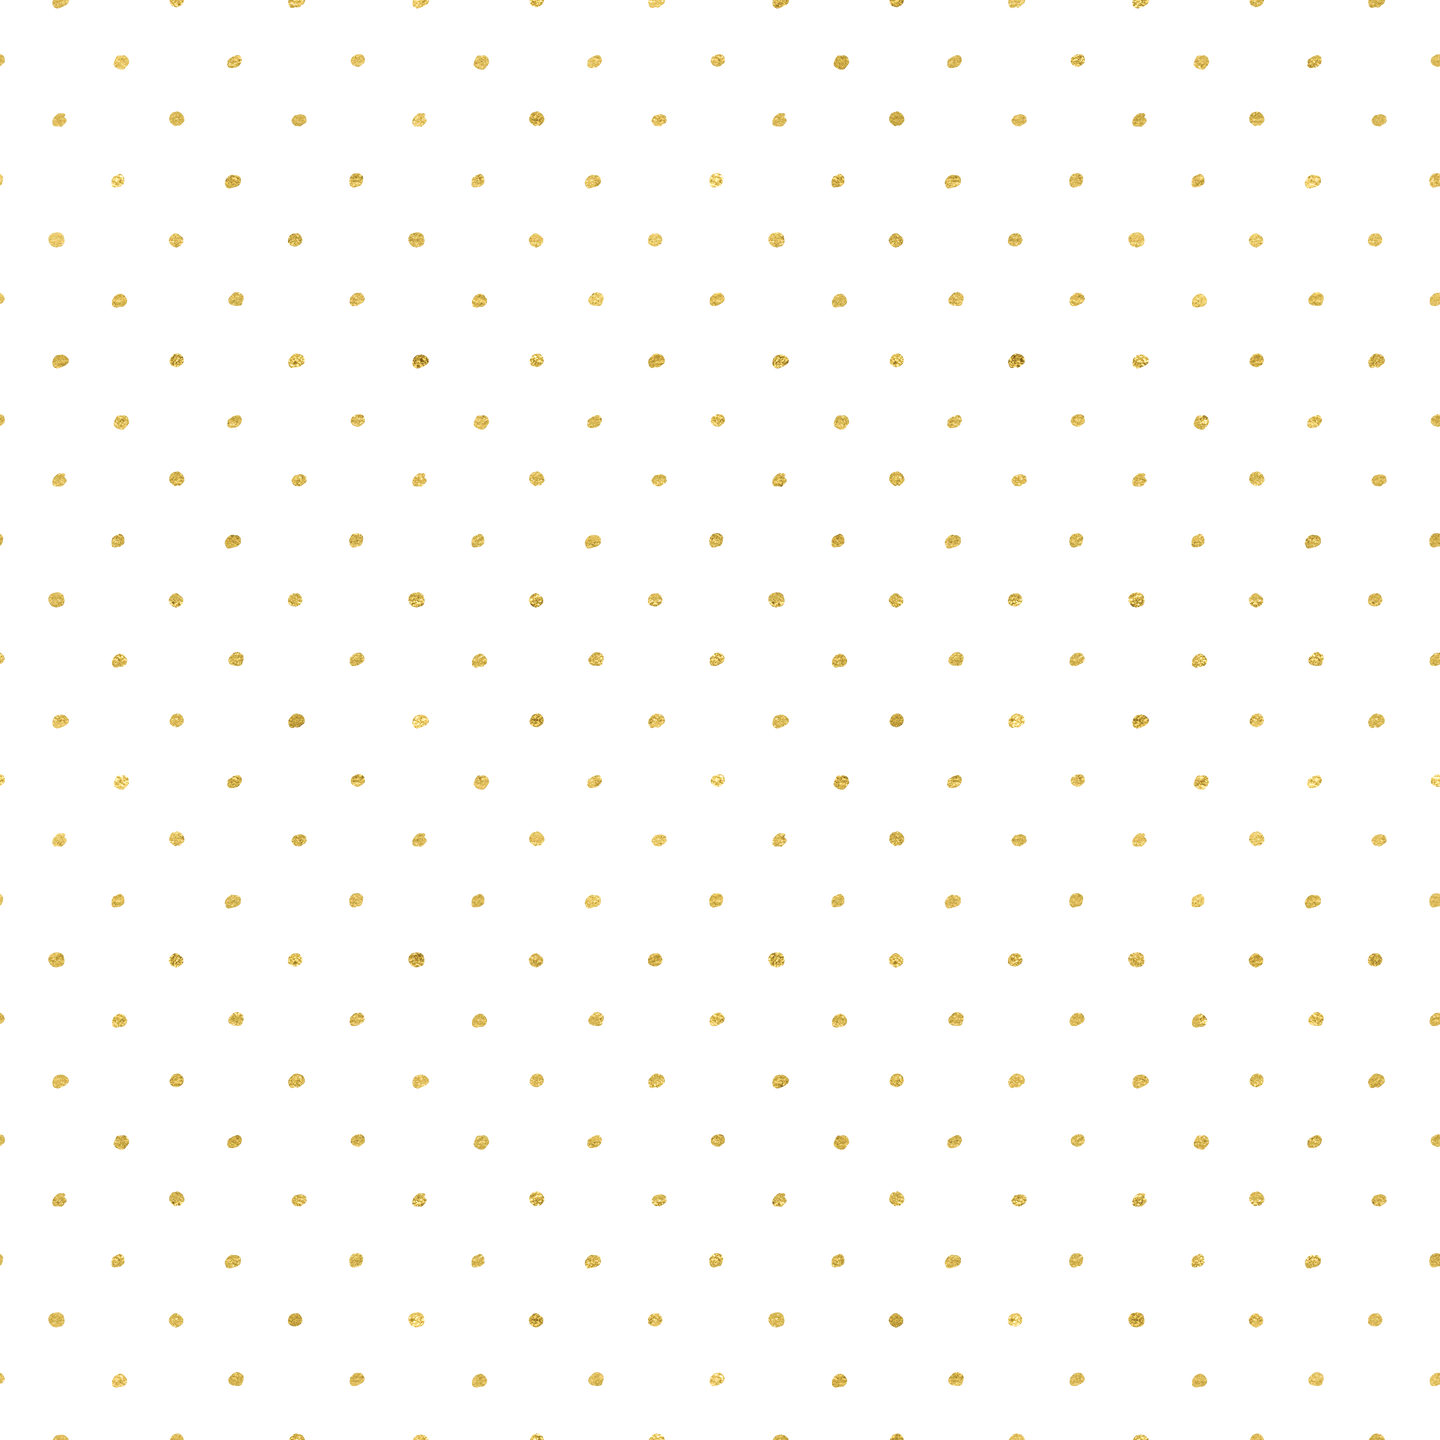 Small Gold Grunge Dots Seamless Pattern